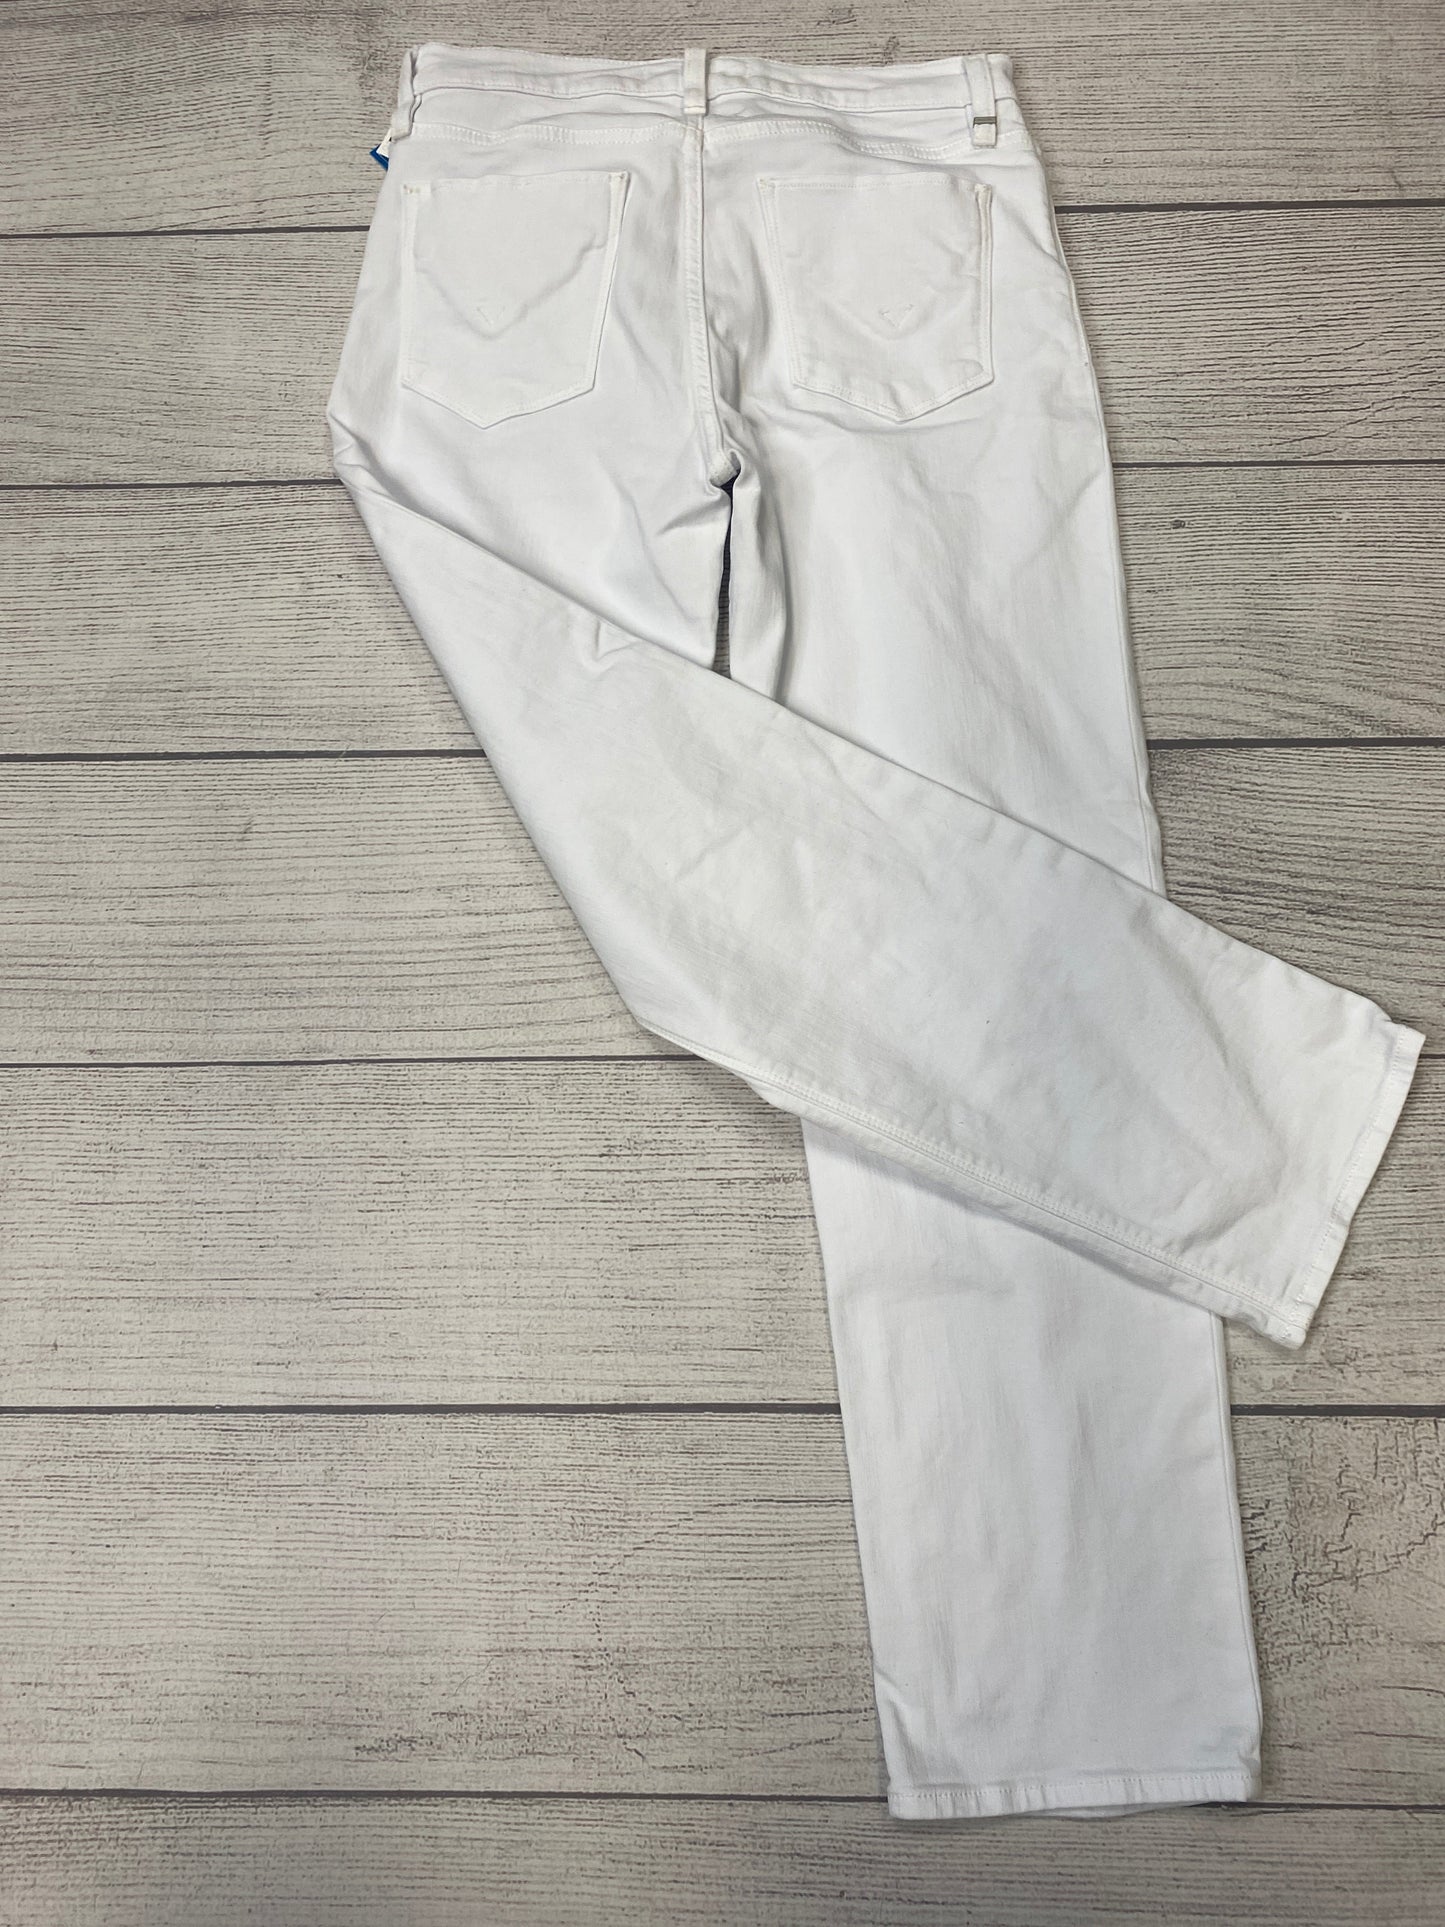 White Jeans Designer Hudson, Size 4